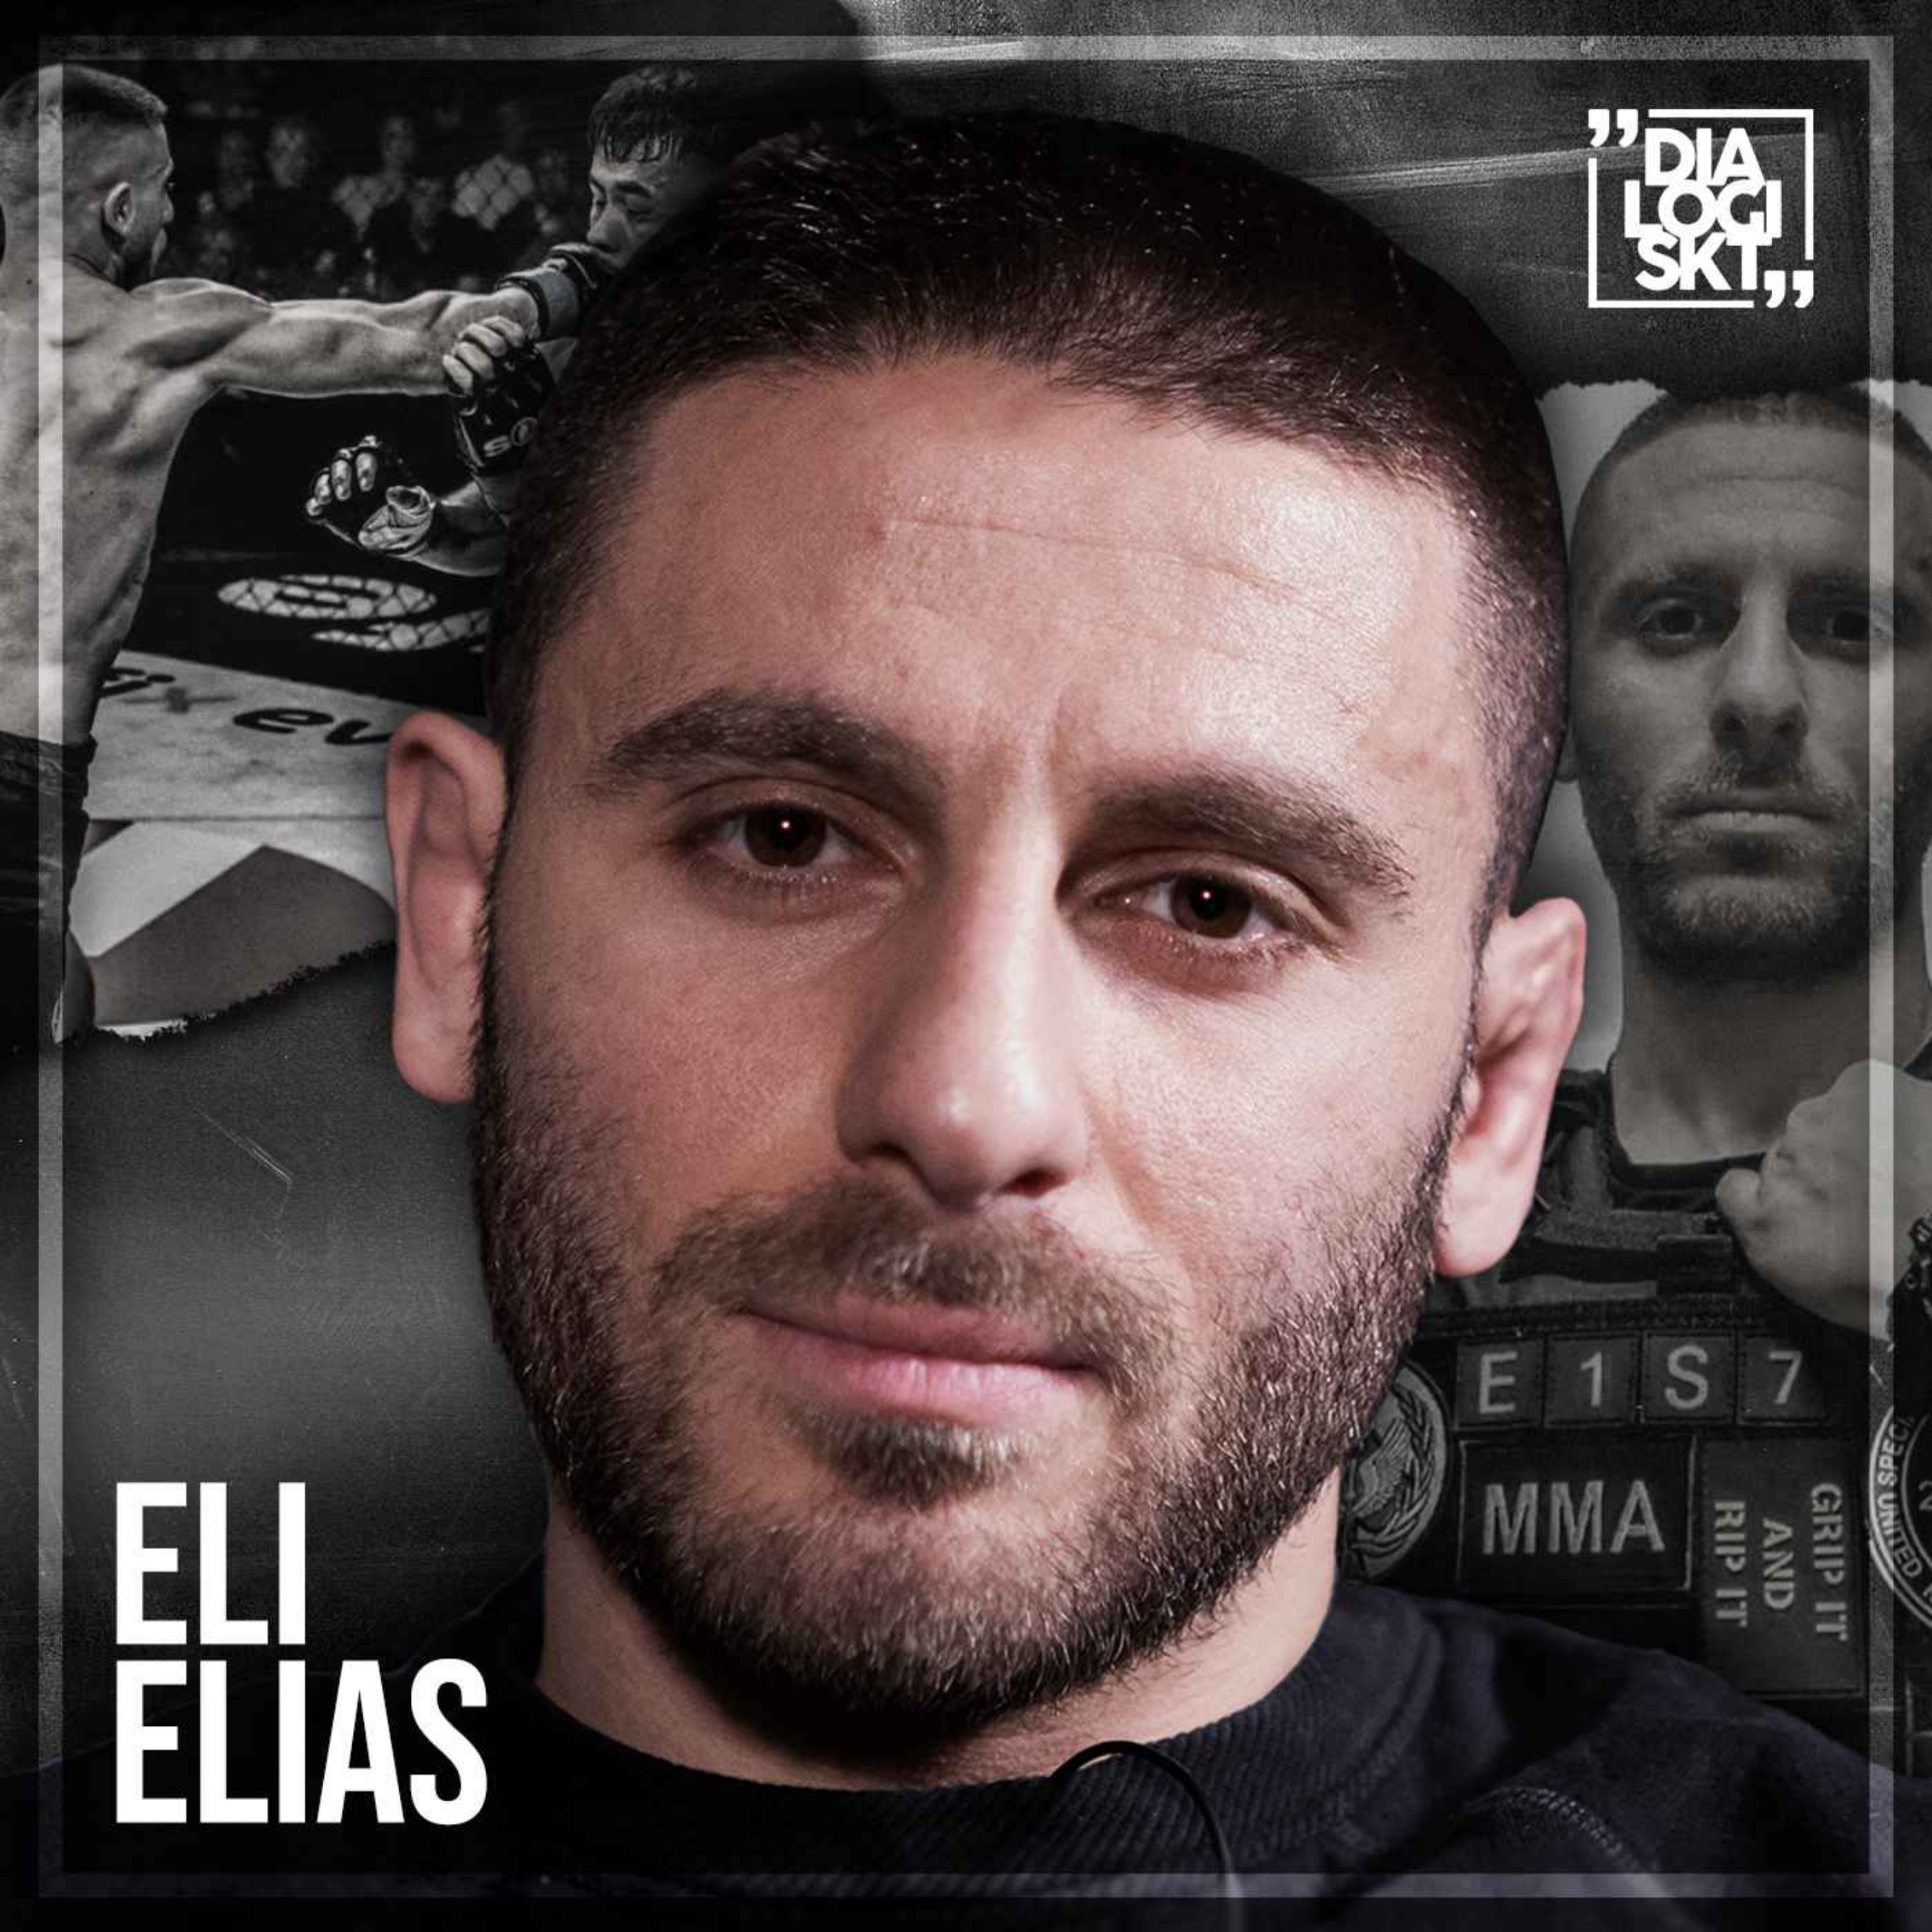 cover art for #147 Eli Elias "MMA & FÖRLORAD KÄRLEK"